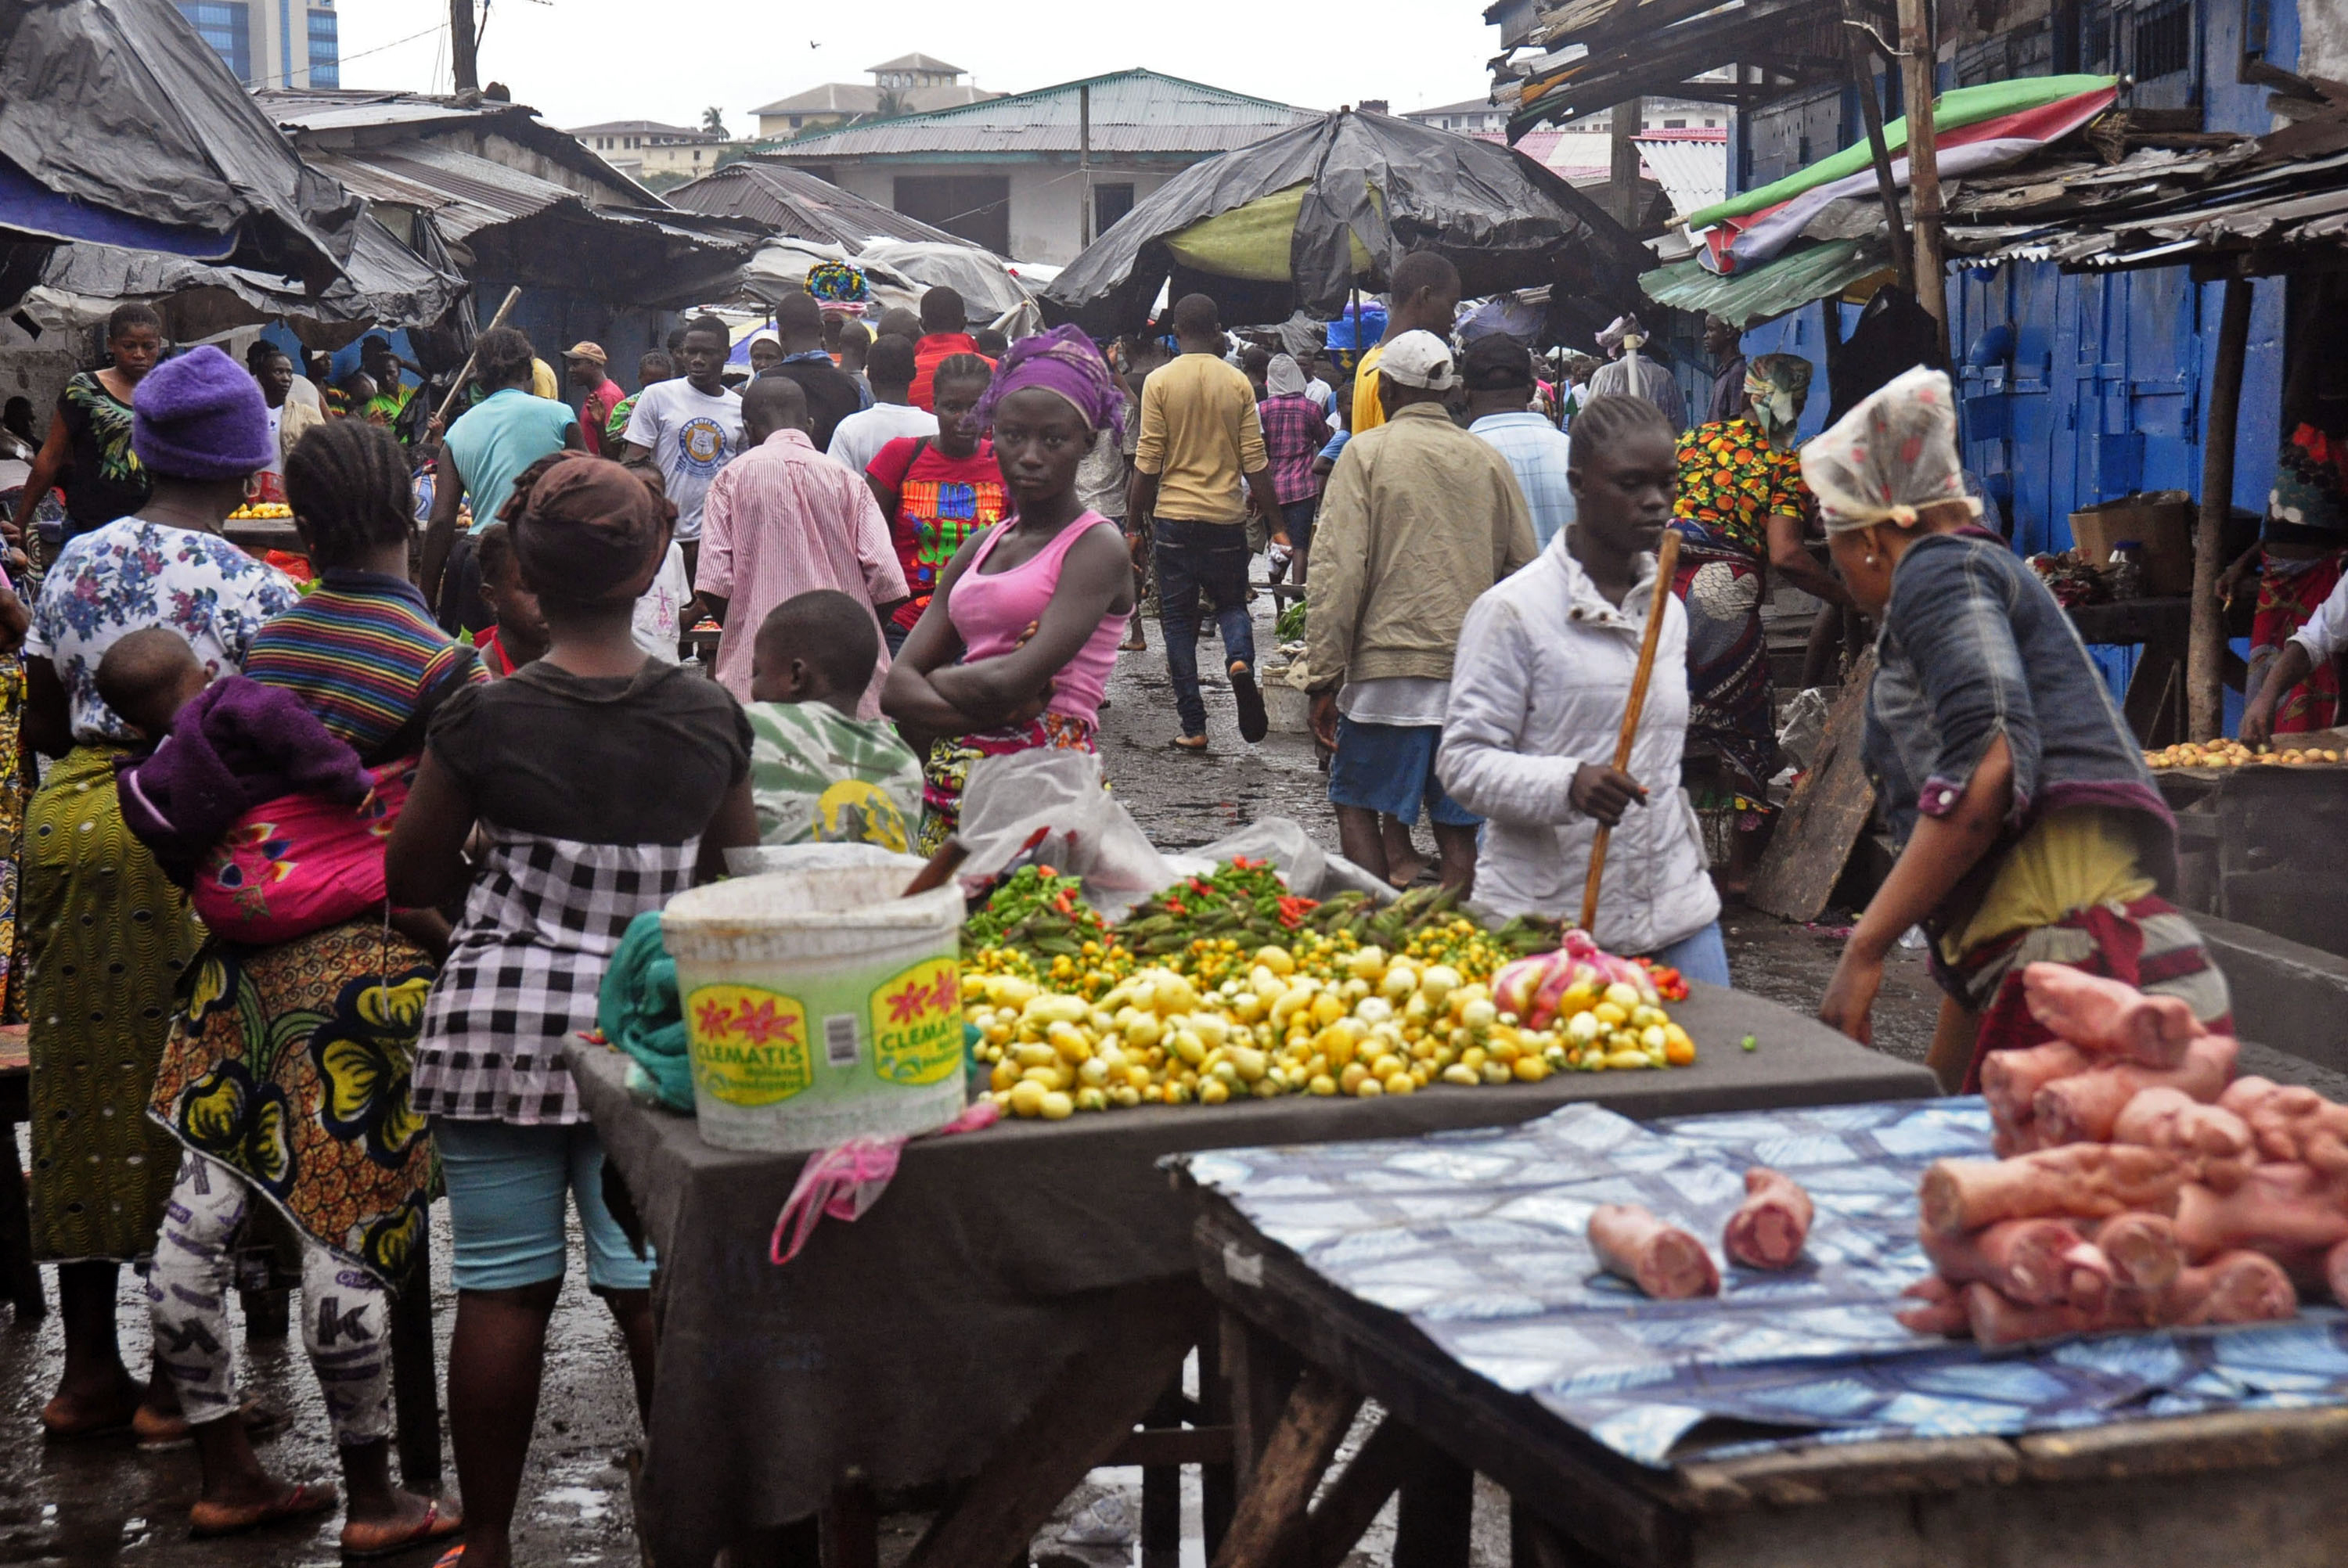 Ο ιός Έμπολα απειλεί την ασφάλεια των τροφίμων, σύμφωνα με τον ΟΗΕ